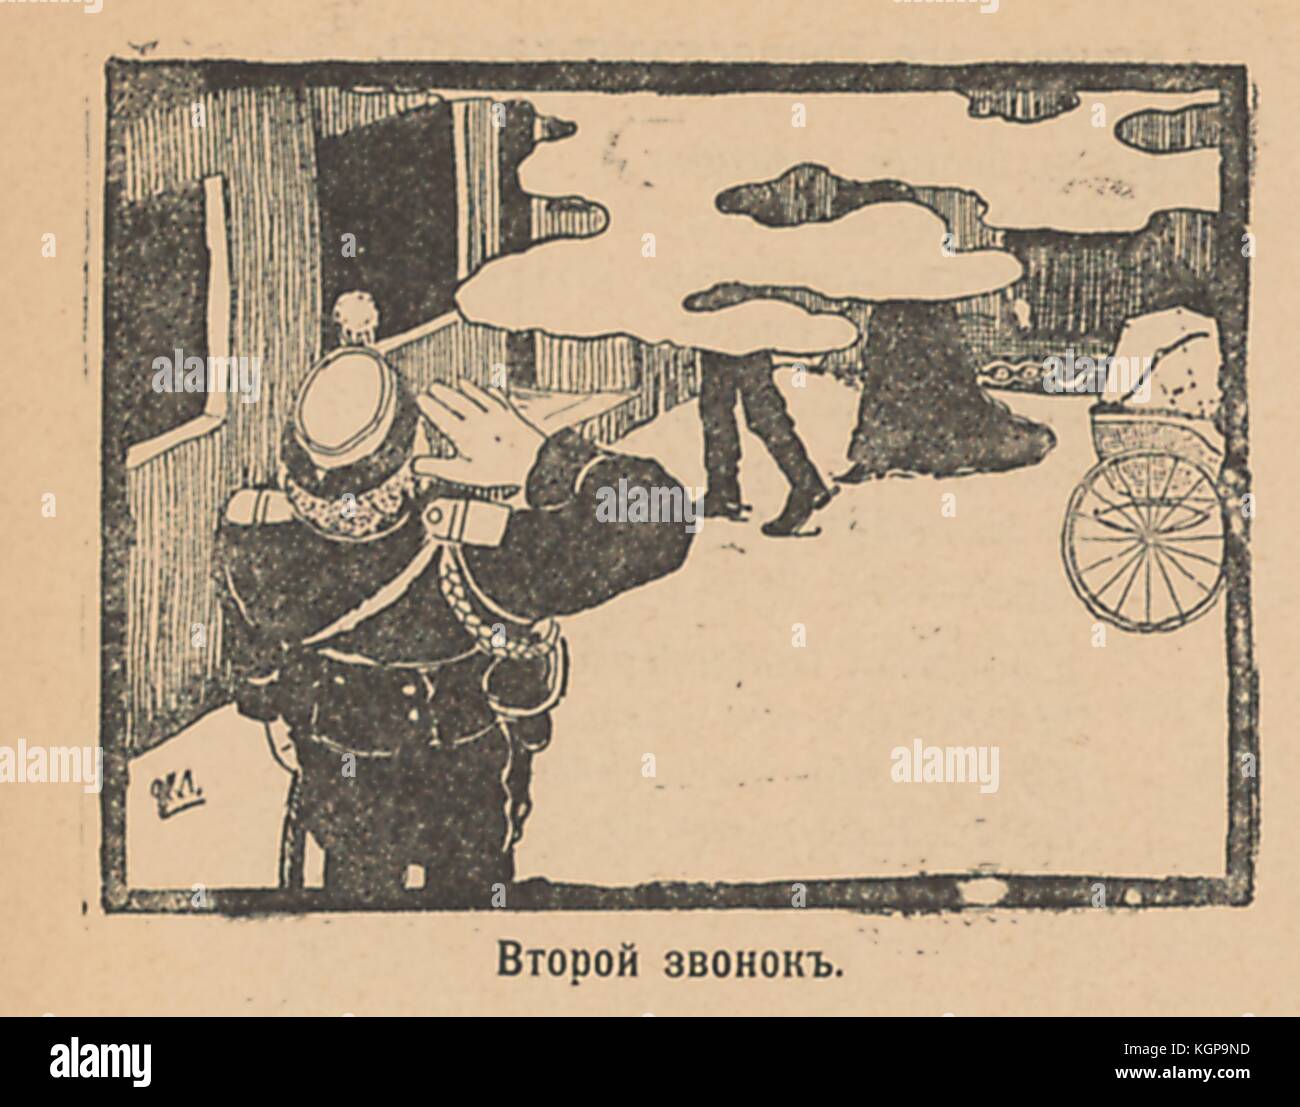 Ilustración de la revista satírica rusa Signal (Signal) que representa a un oficial militar saludando mientras un hombre y una mujer entran en un vagón de tren detrás de una nube de humo, con un carruaje de bebé detrás de ellos, con texto que dice 'Segunda llamada', 1905. () Foto de stock